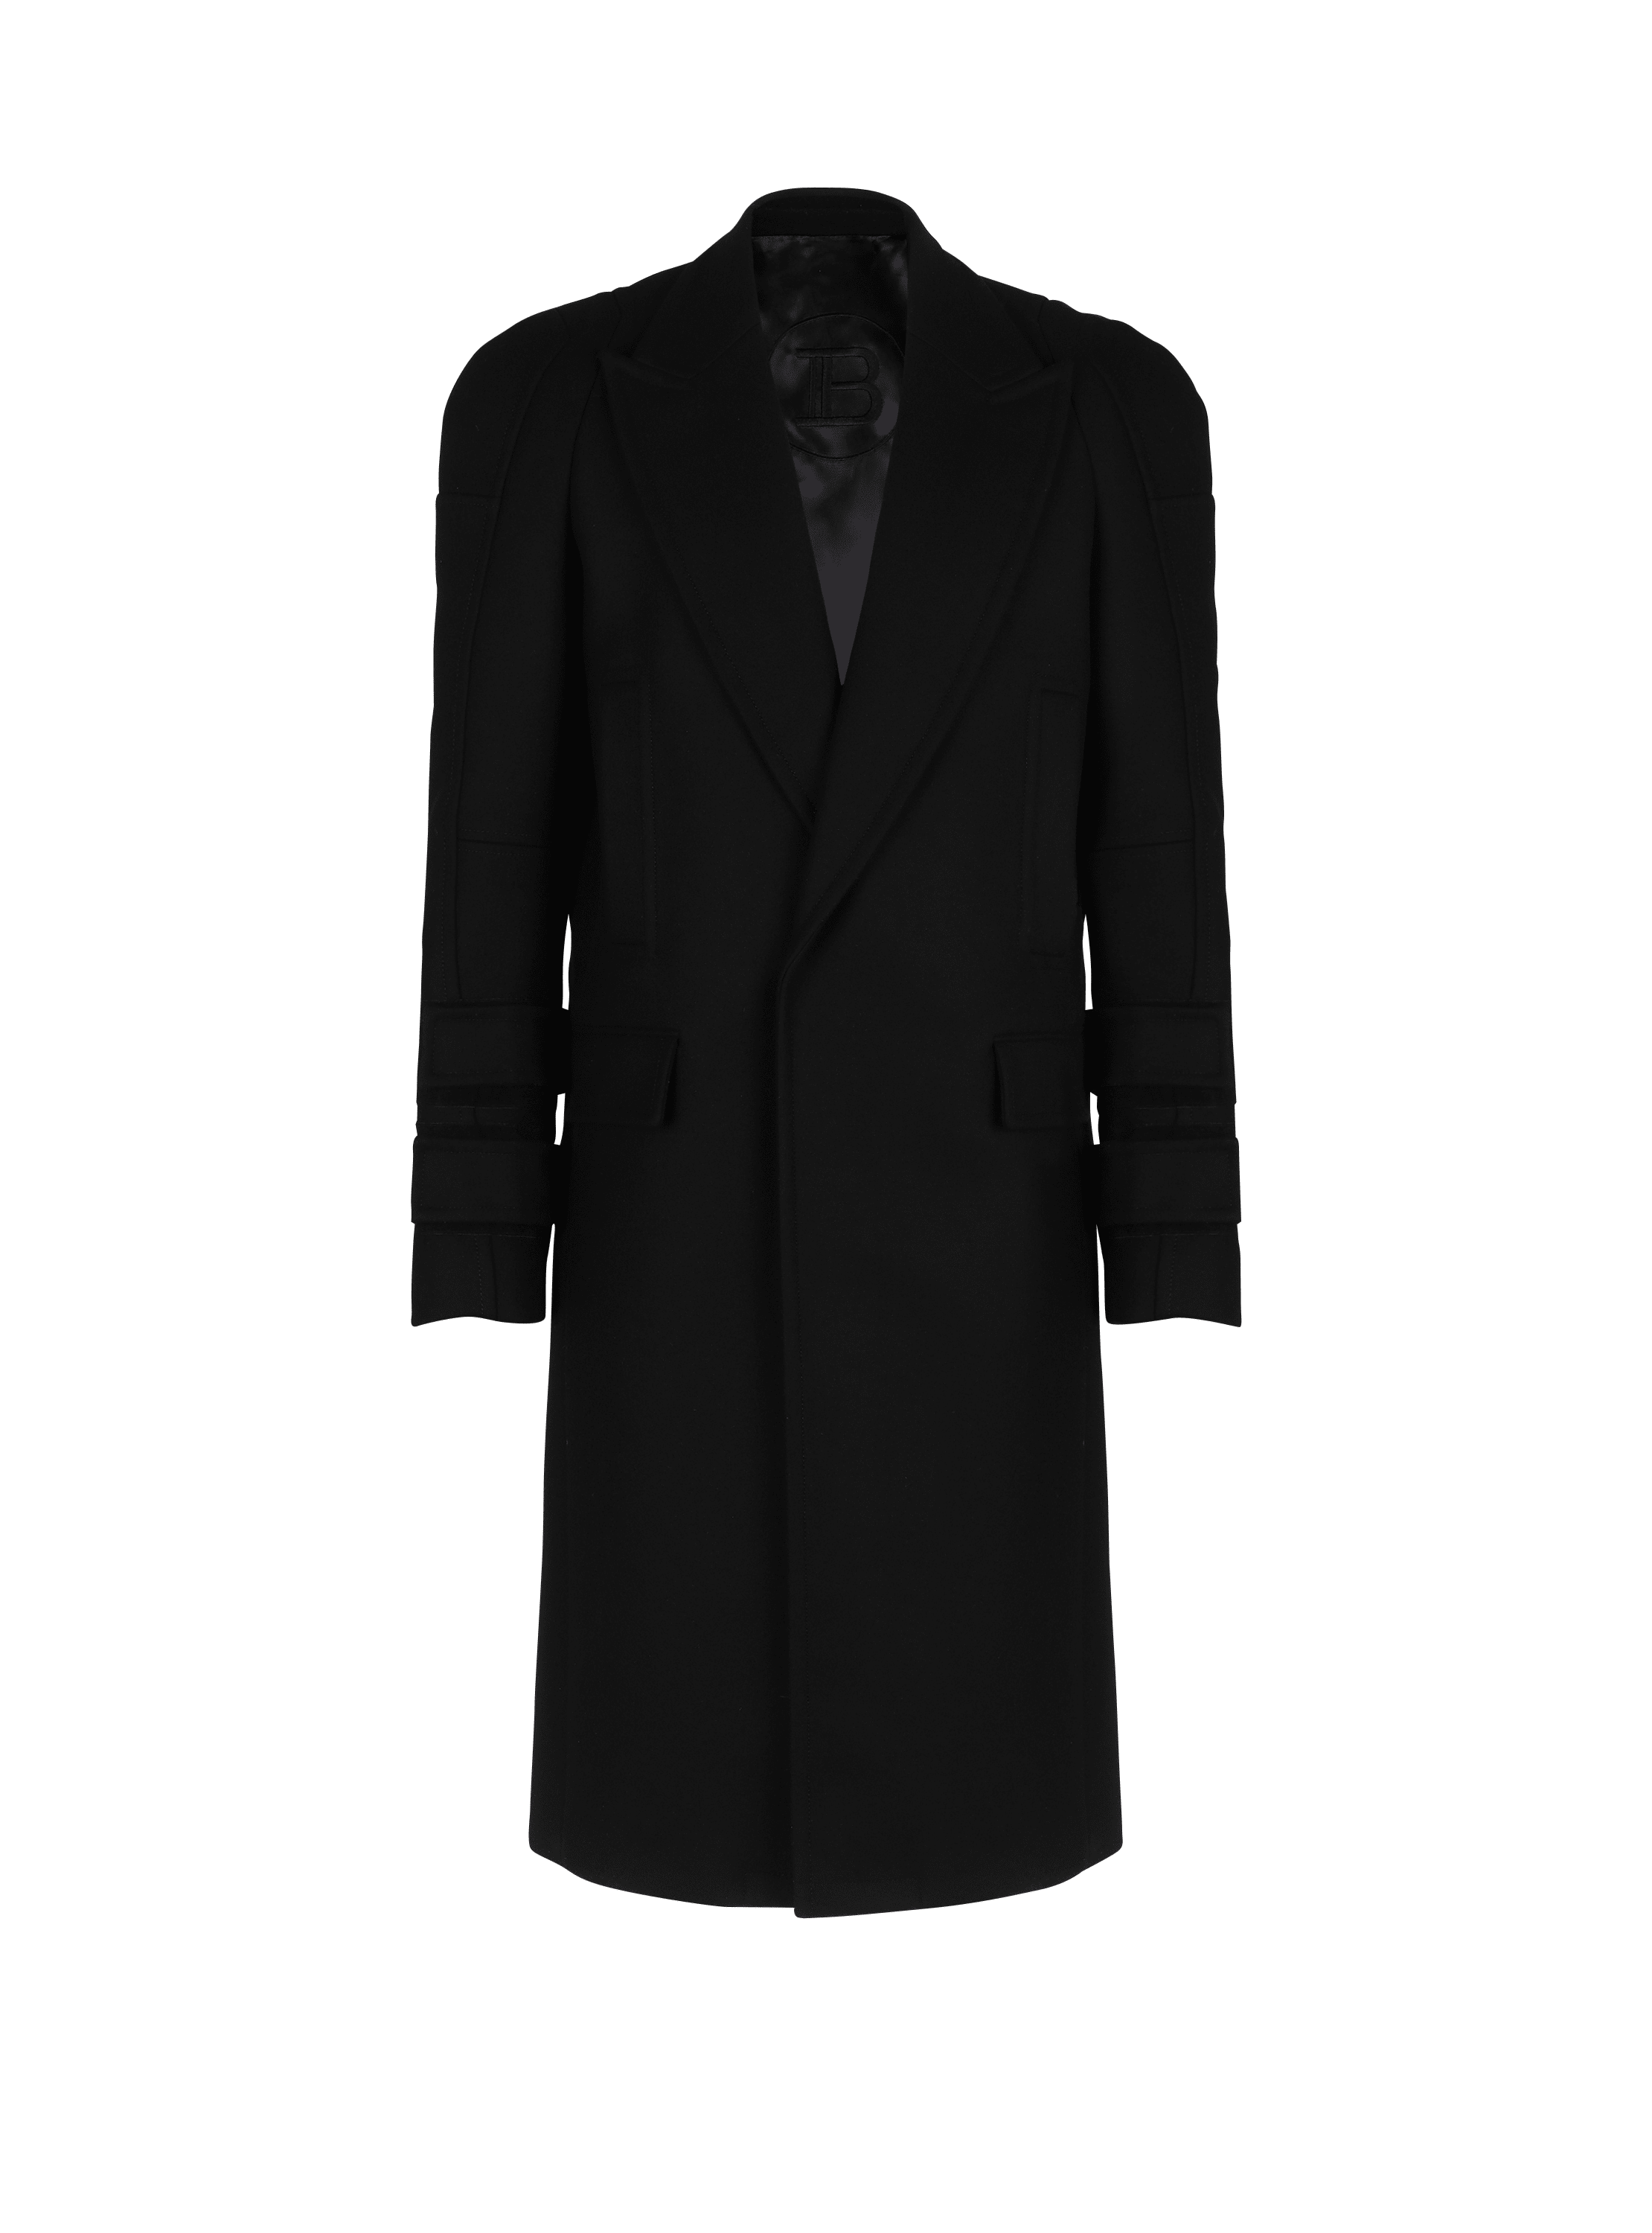 manteaux long homme laine